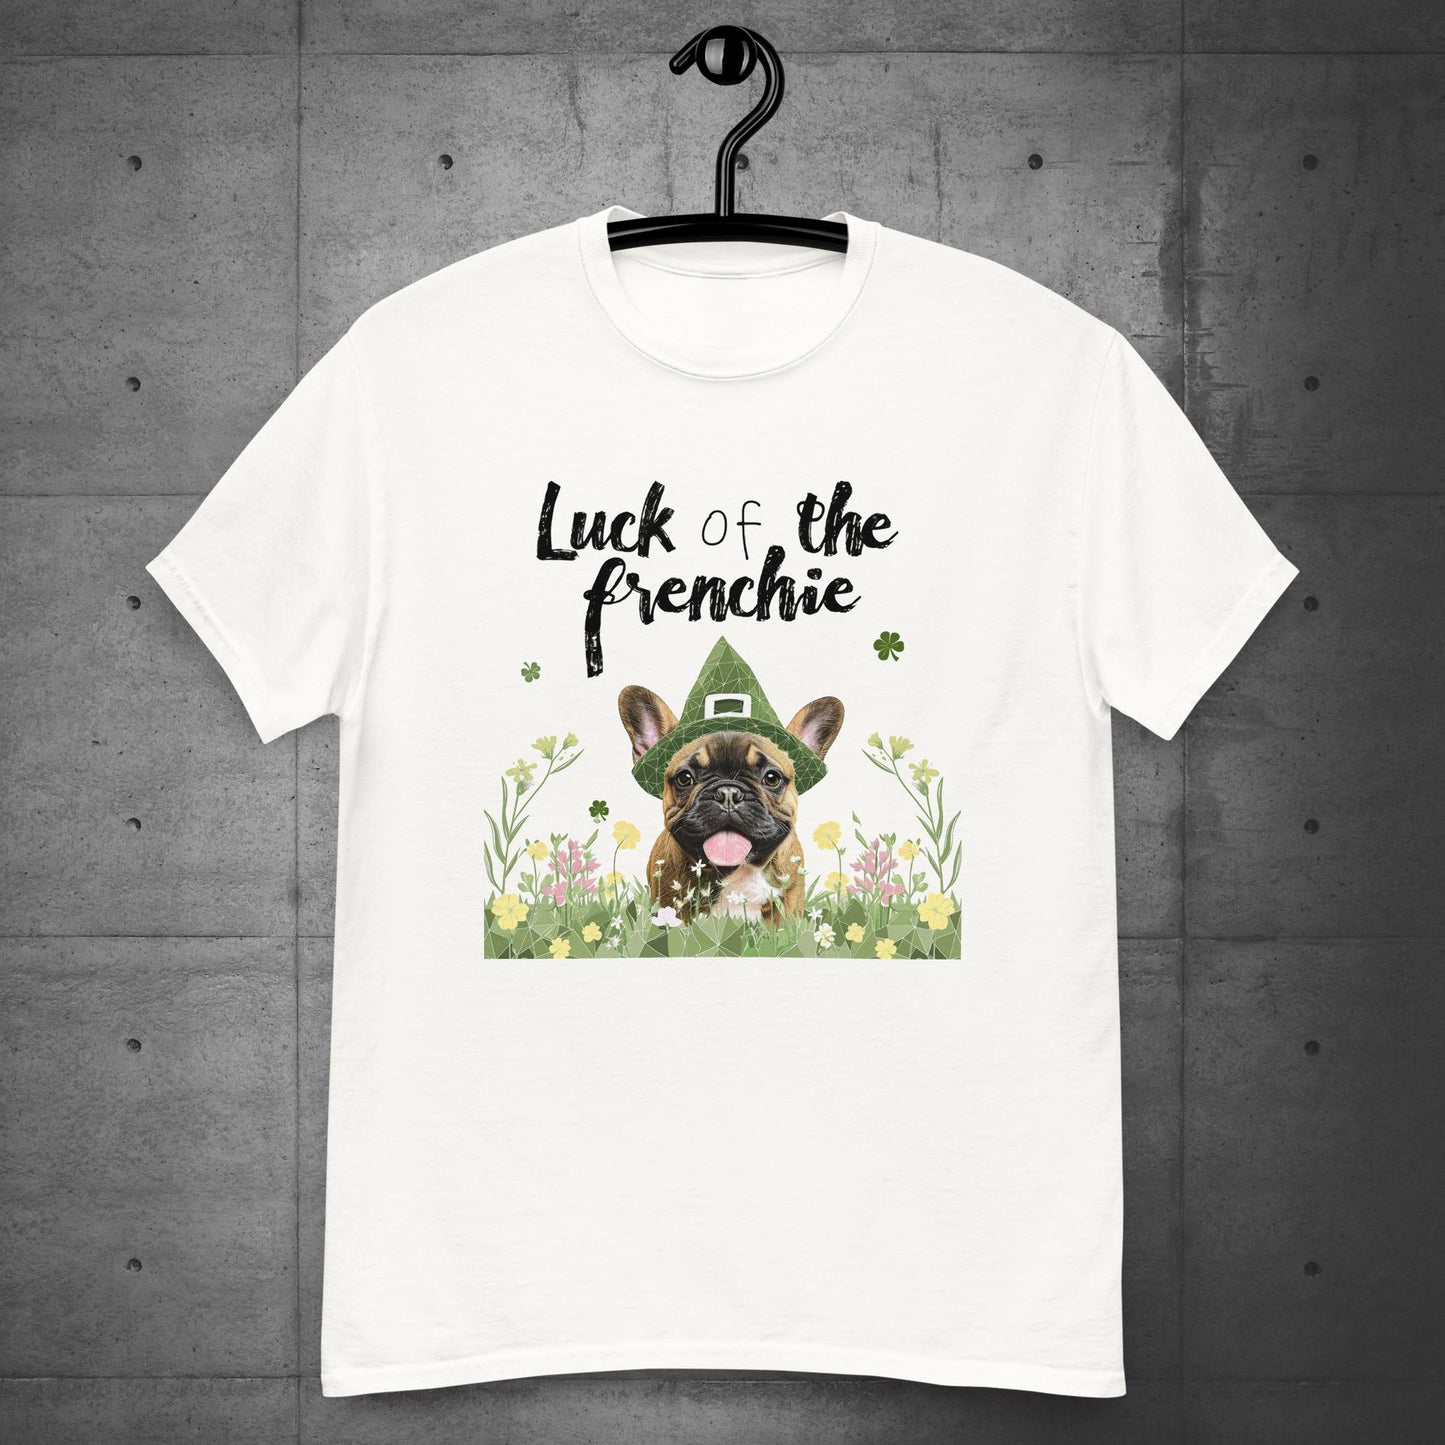 Irish Leprechaun Frenchie Unisex T-Shirt.